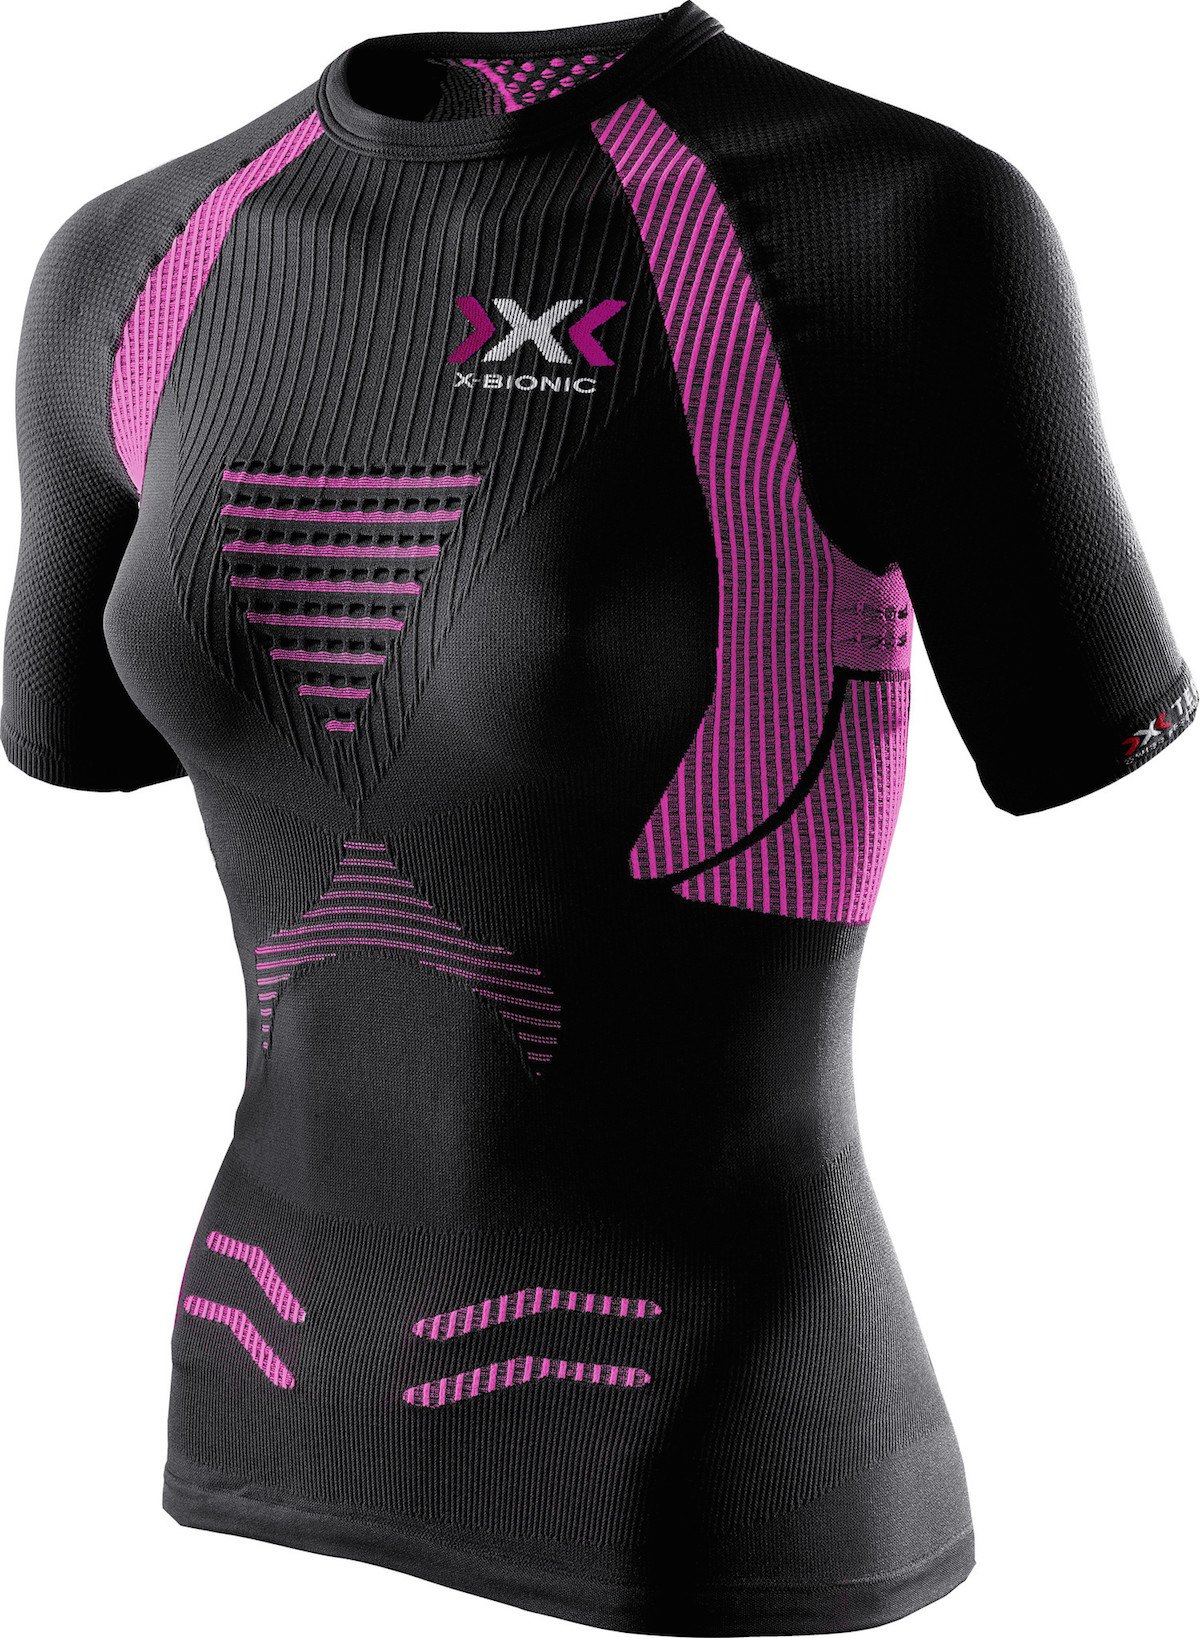 X-Bionic - The Trick - T-Shirt - Women's